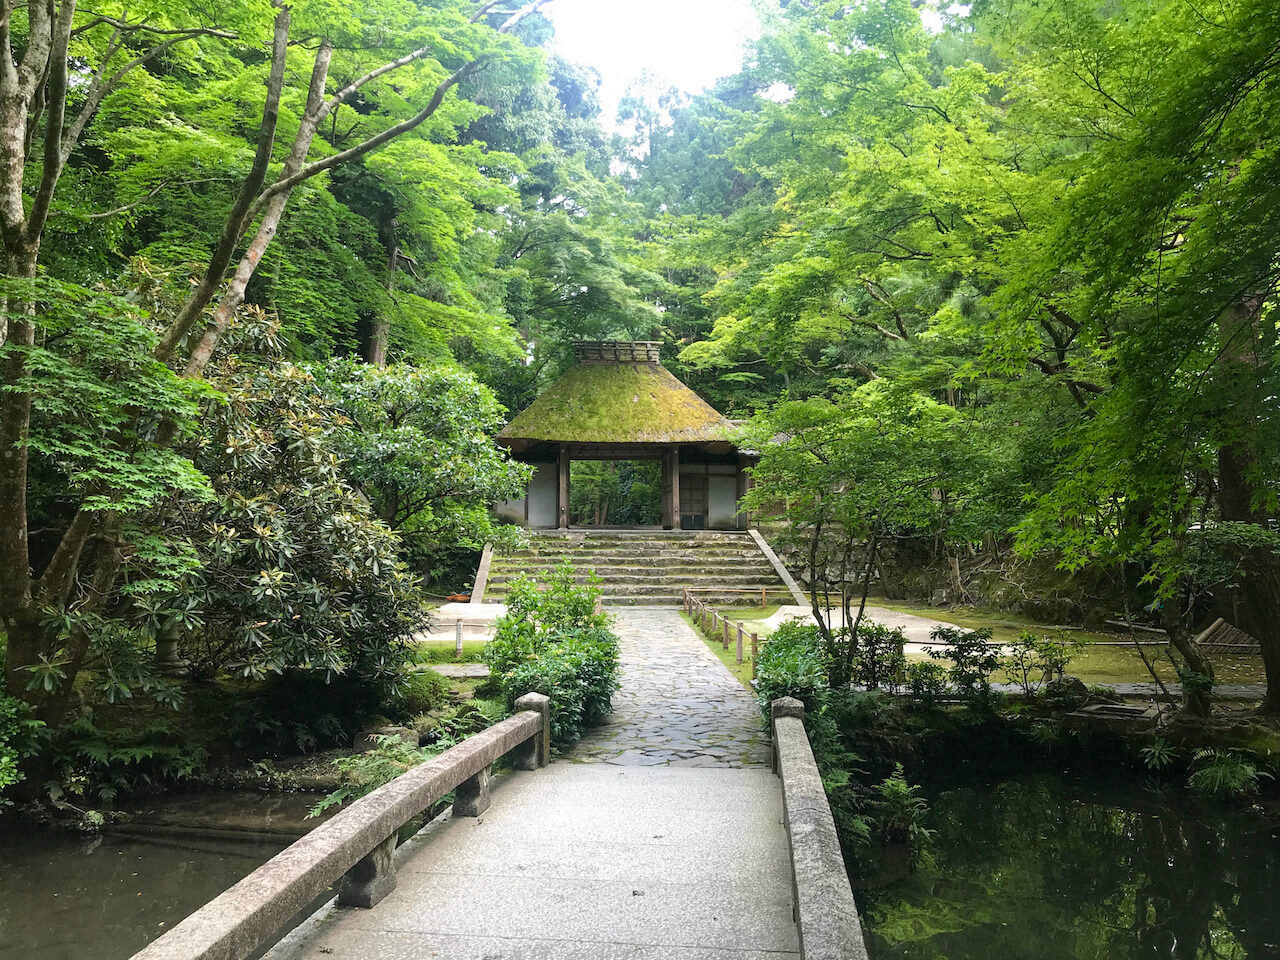 Honen-in Temple in Kyoto